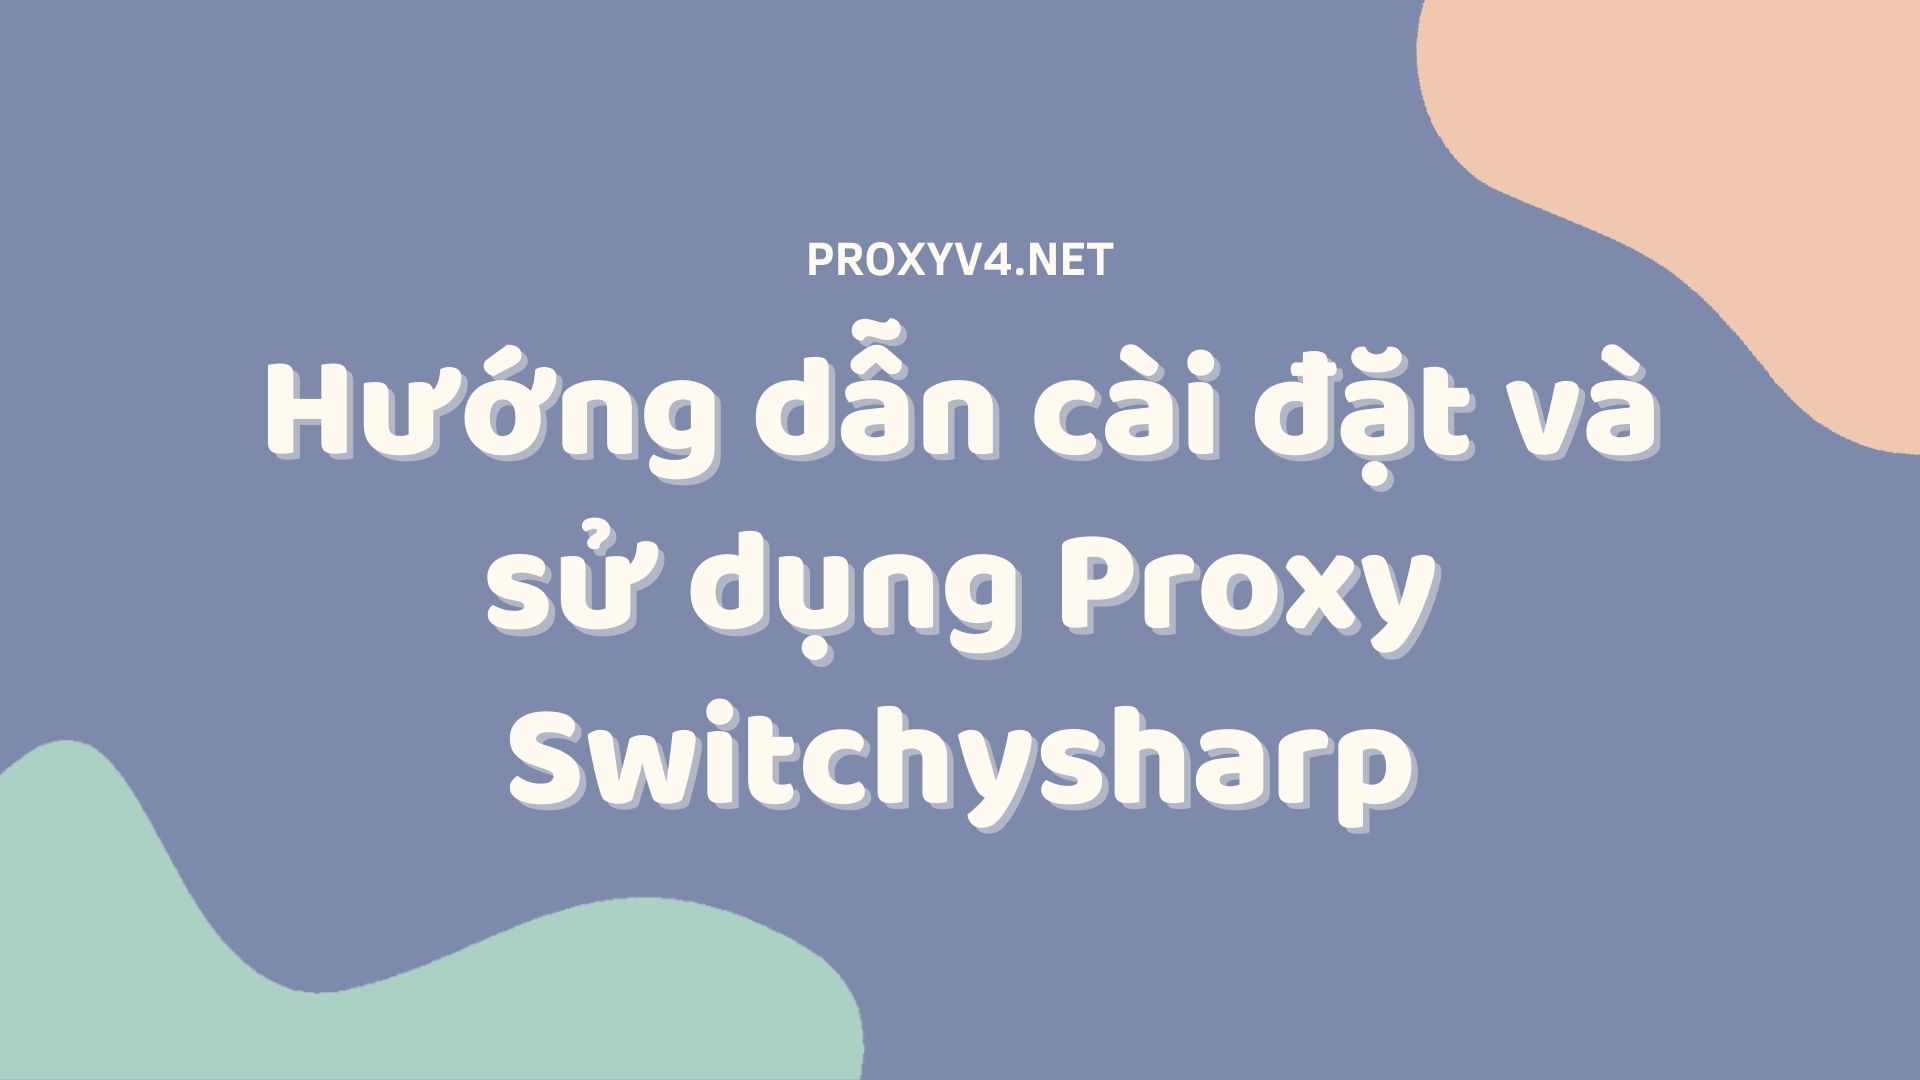 Hướng dẫn cài đặt và sử dụng Proxy Switchysharp